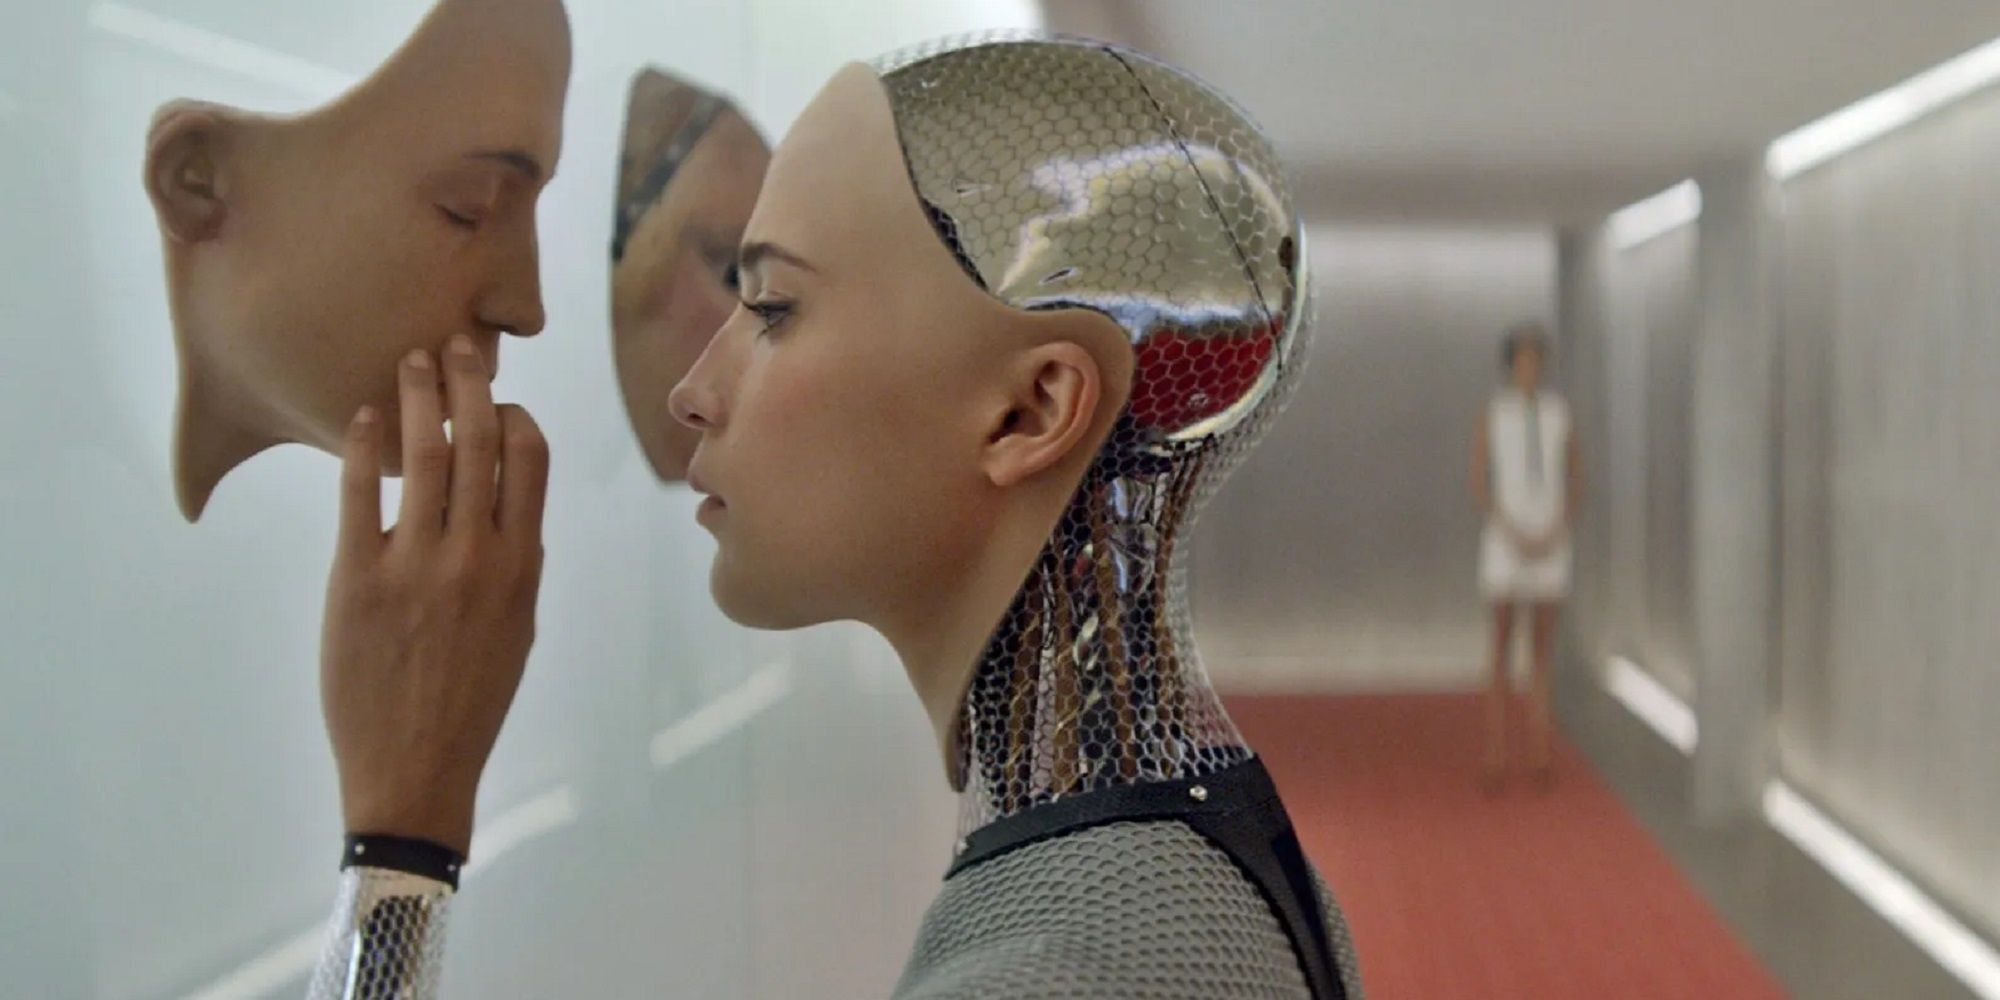 Эва смотрит на лицо прототипа искусственного интеллекта в фильме "Из машины".